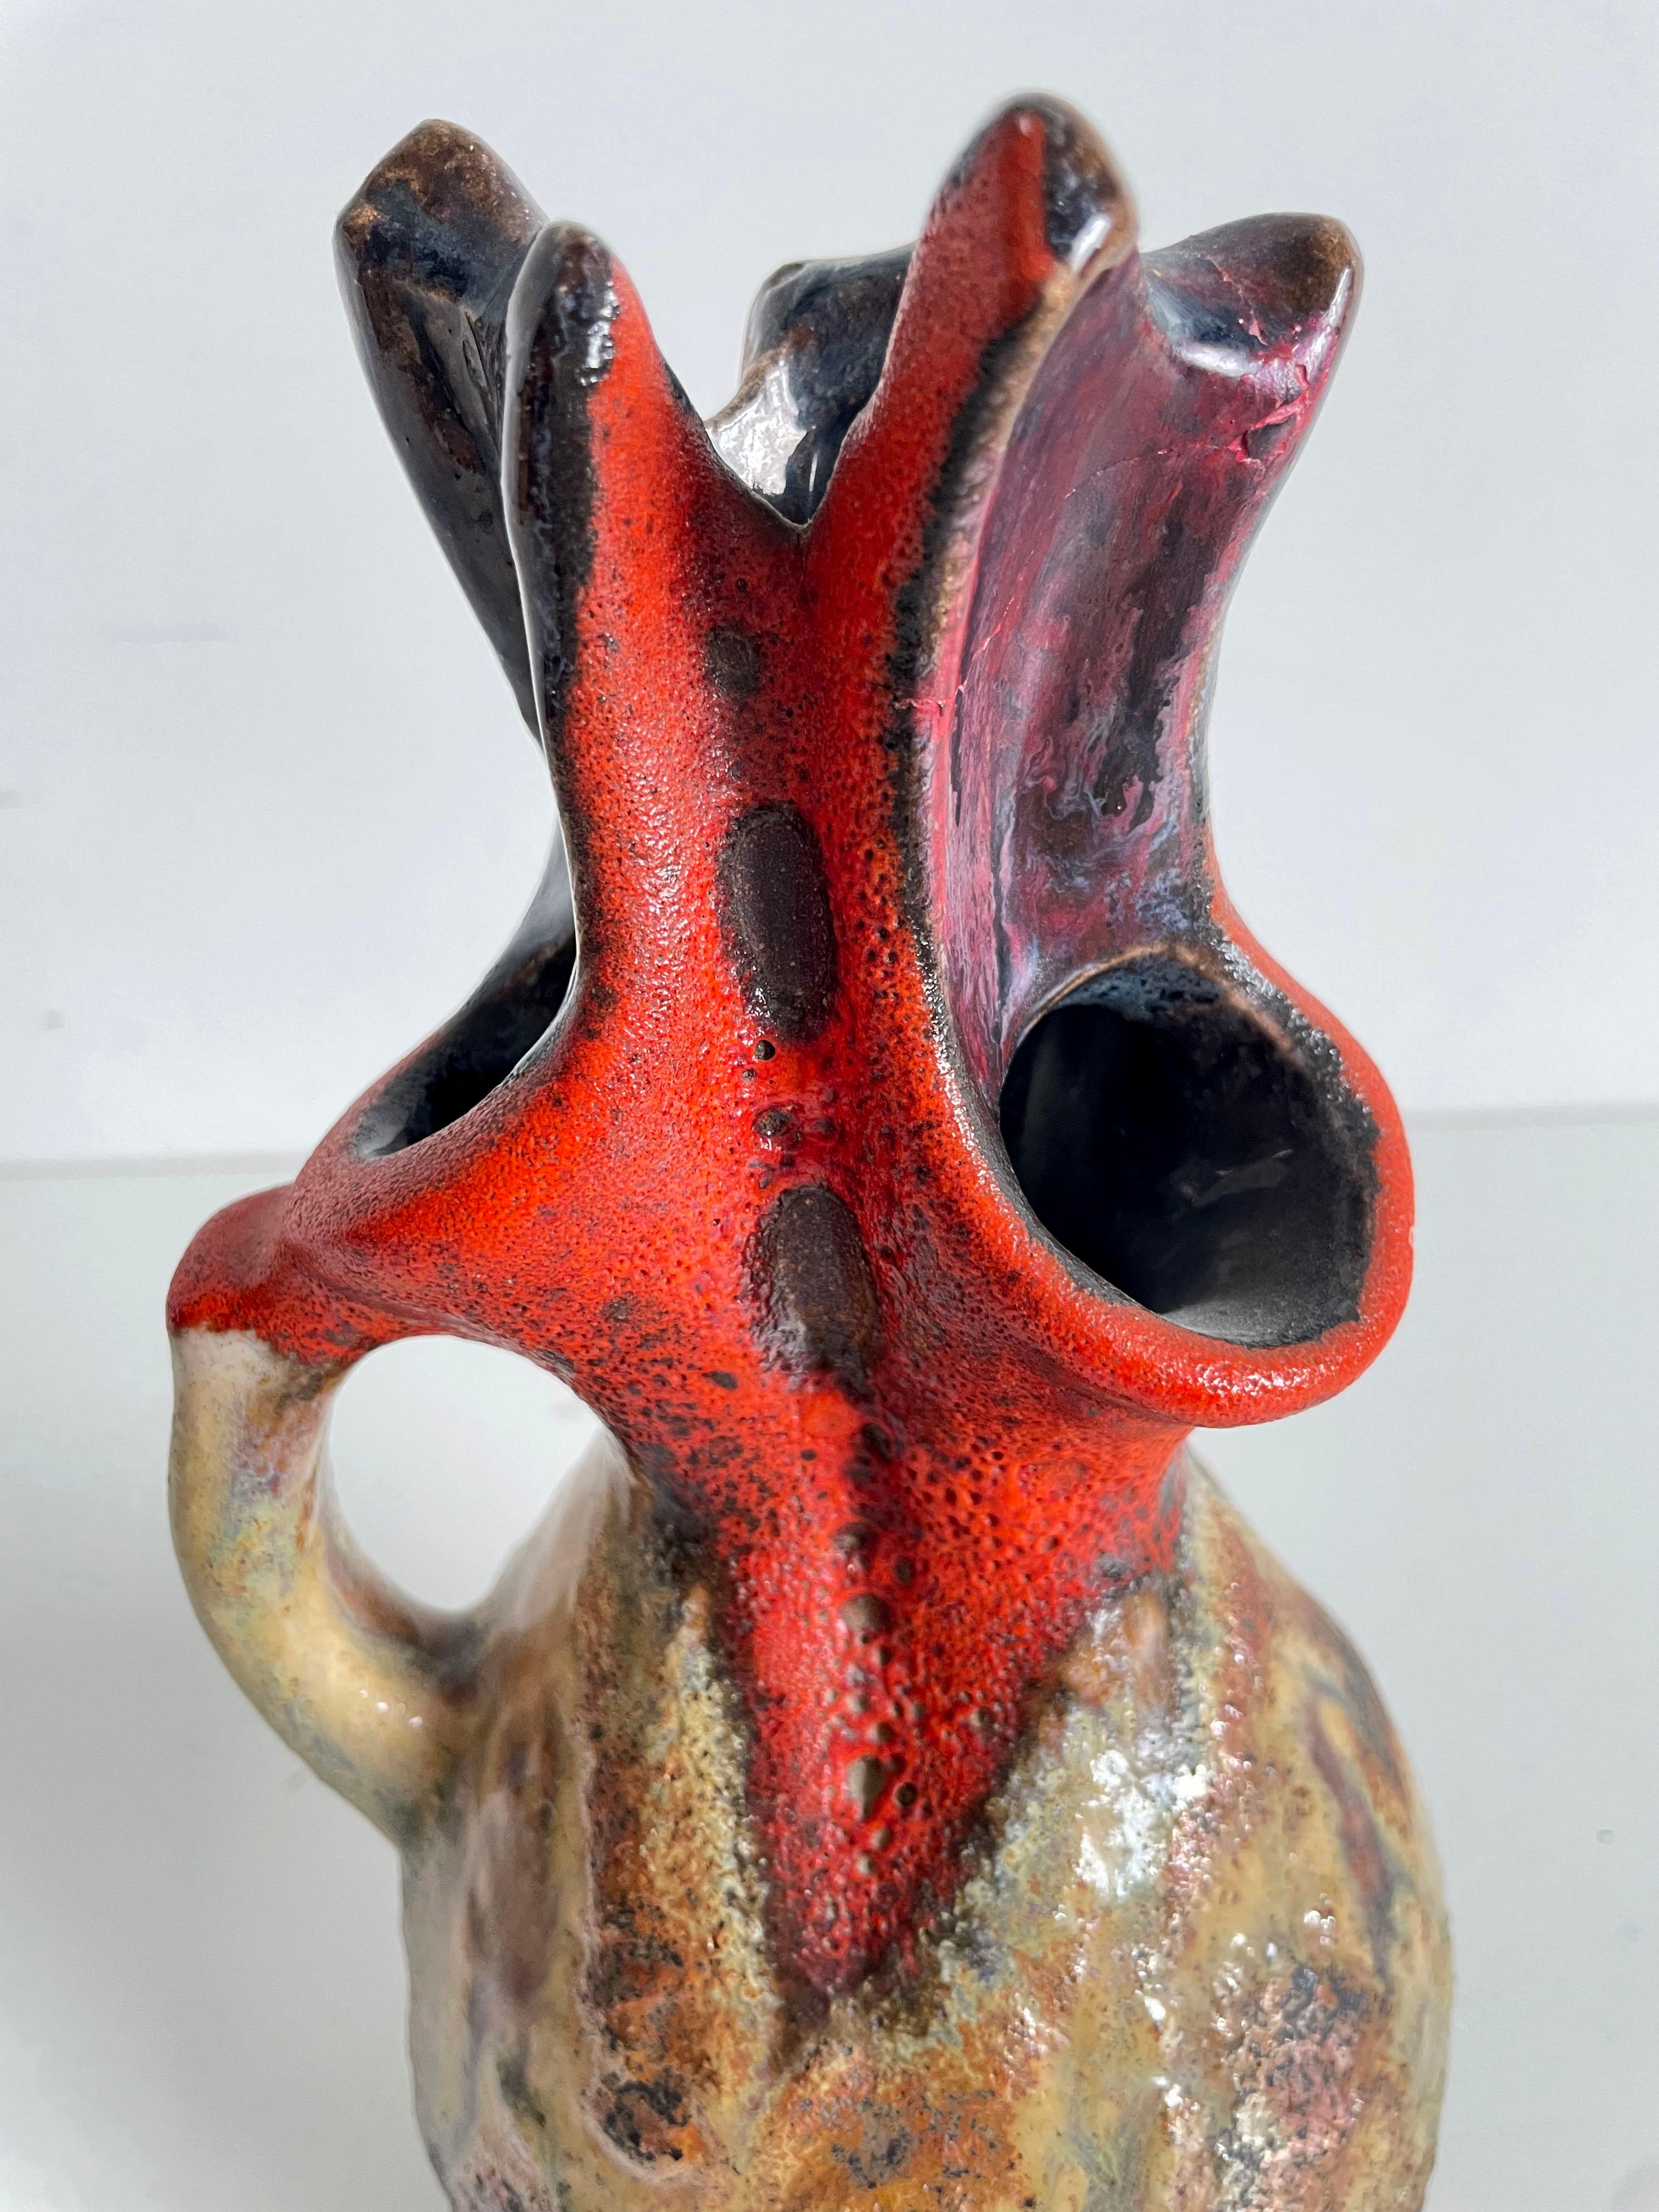 Rare vase de forme organique en forme de pichet en lave grasse Walter Design/One  avec les belles couleurs Brun-Beige et Rouge, numéro de formulaire 200-26, Allemagne de l'Ouest 1970.

Le vase est en excellent état et pèse 1,2 kg.